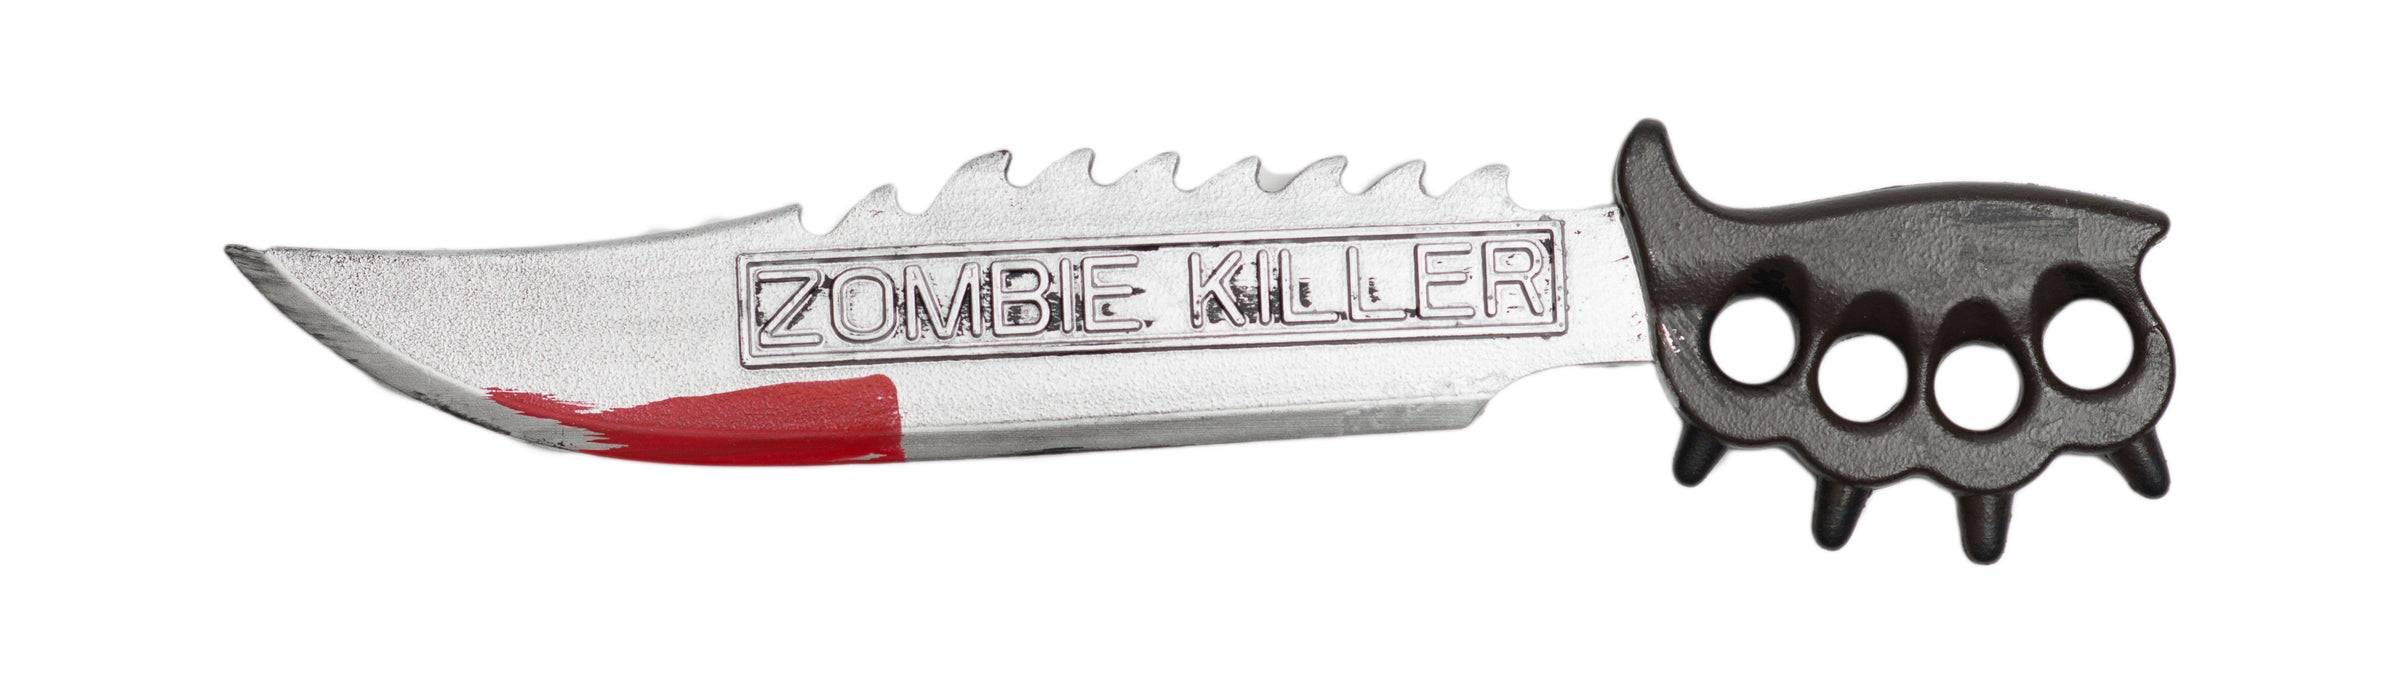 Zombie killer mes 50cm